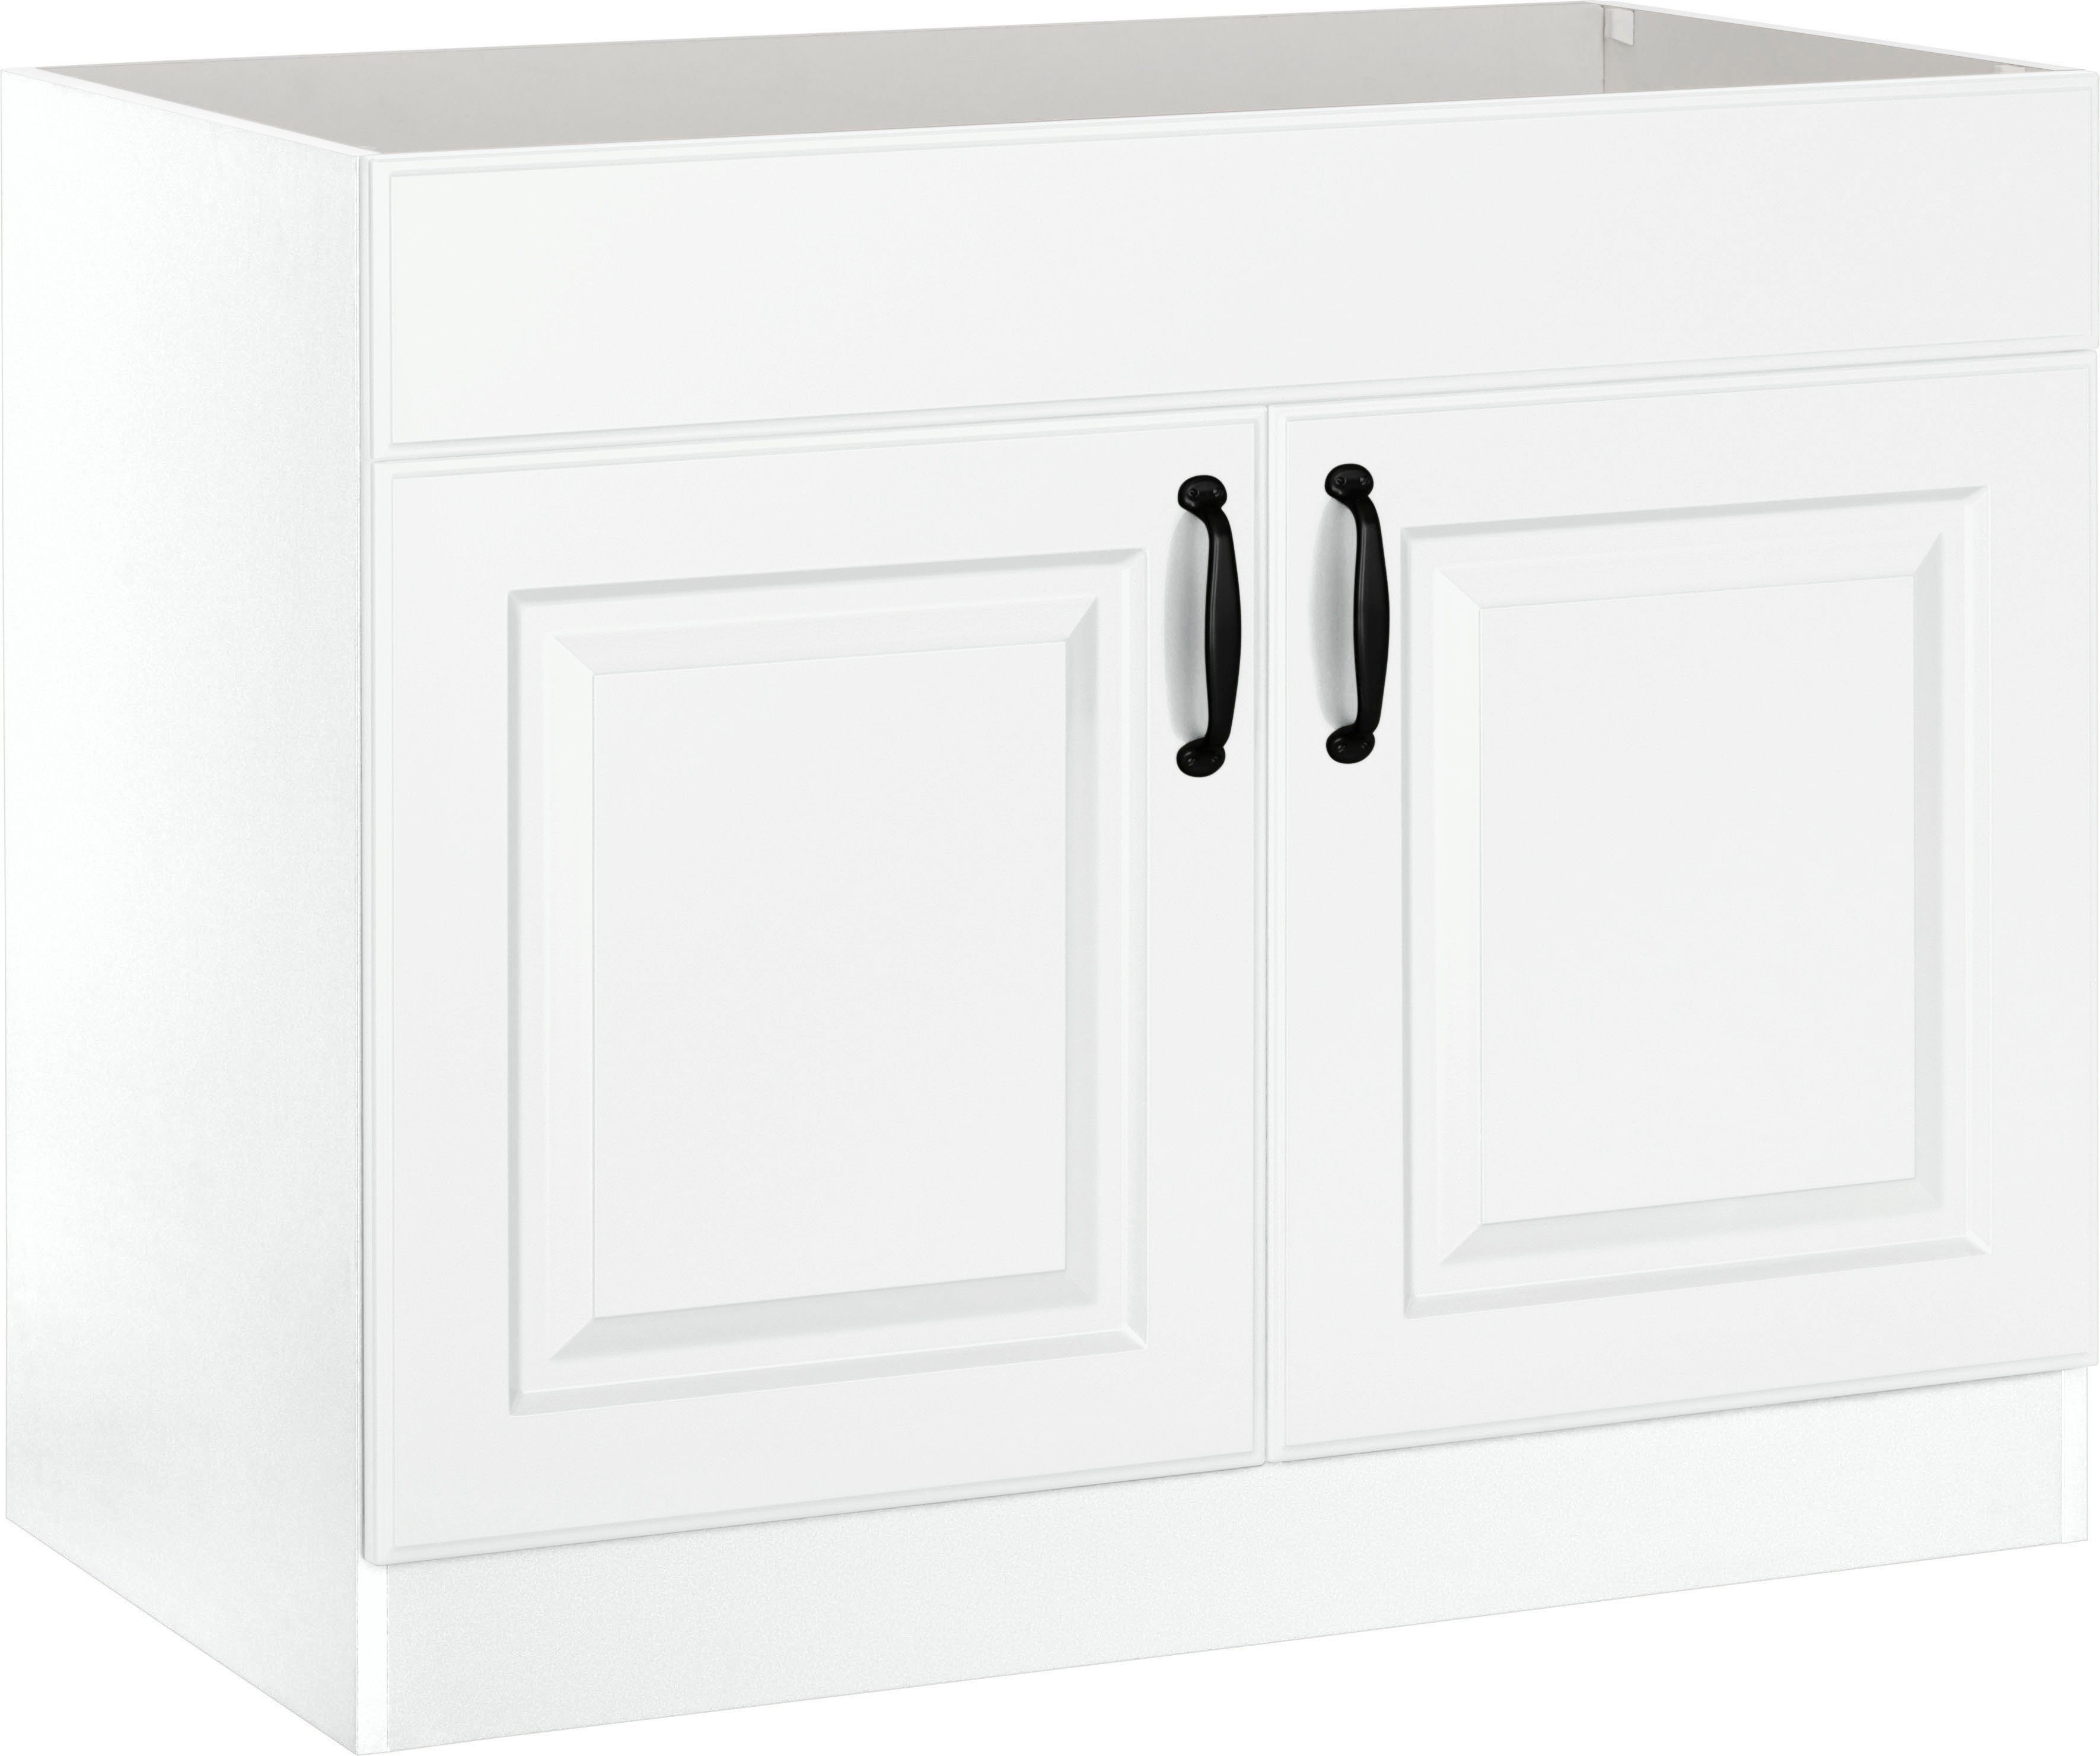 wiho Küchen Spülenschrank Erla 100 cm breit mit Kassettenfront, ohne Arbeitsplatte Weiß/Weiß | Weiß | Spülenschränke